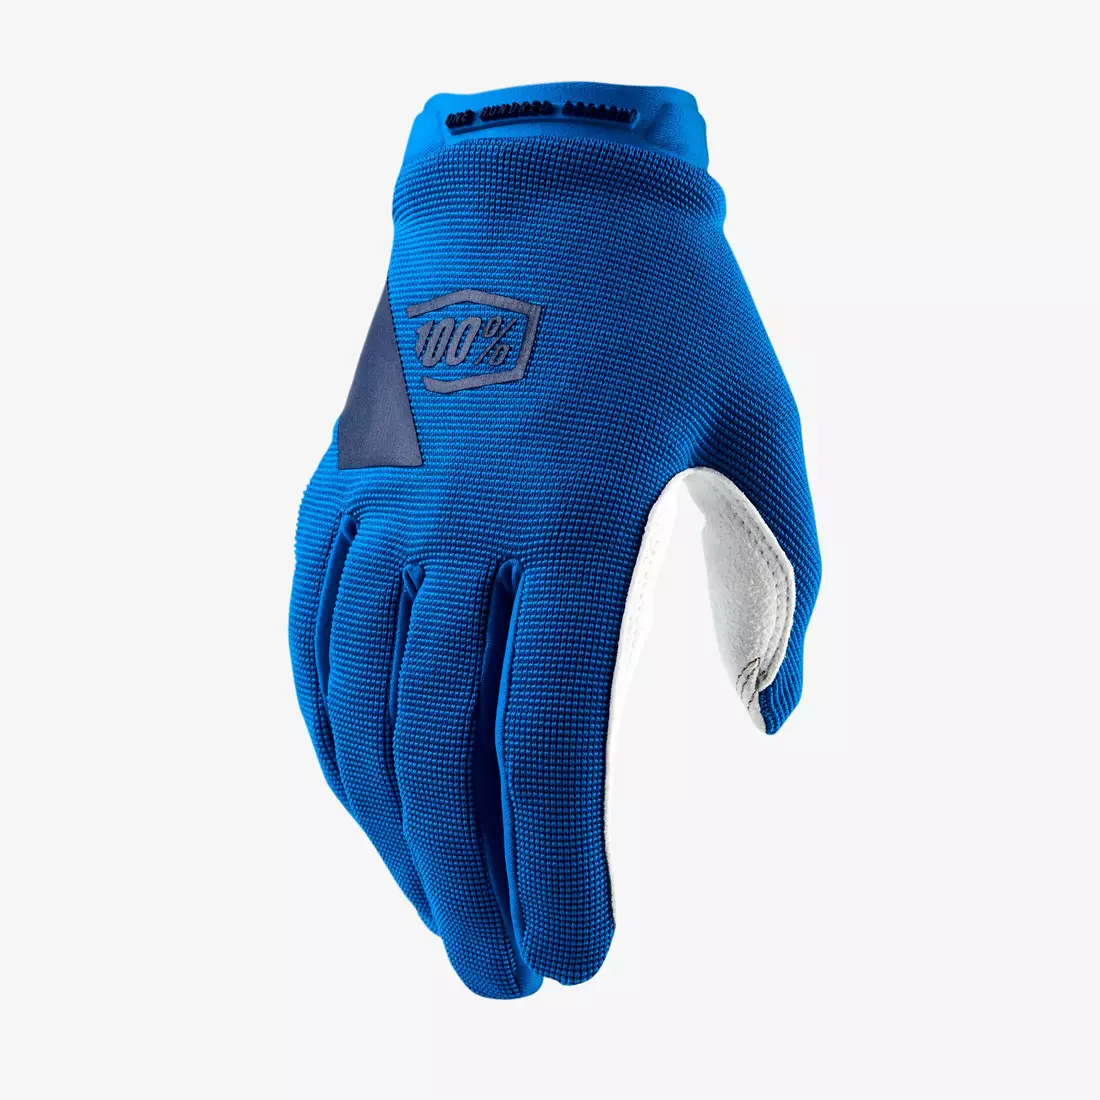 100% dámske cyklistické rukavice ridecamp, modré STO-11018-002-10